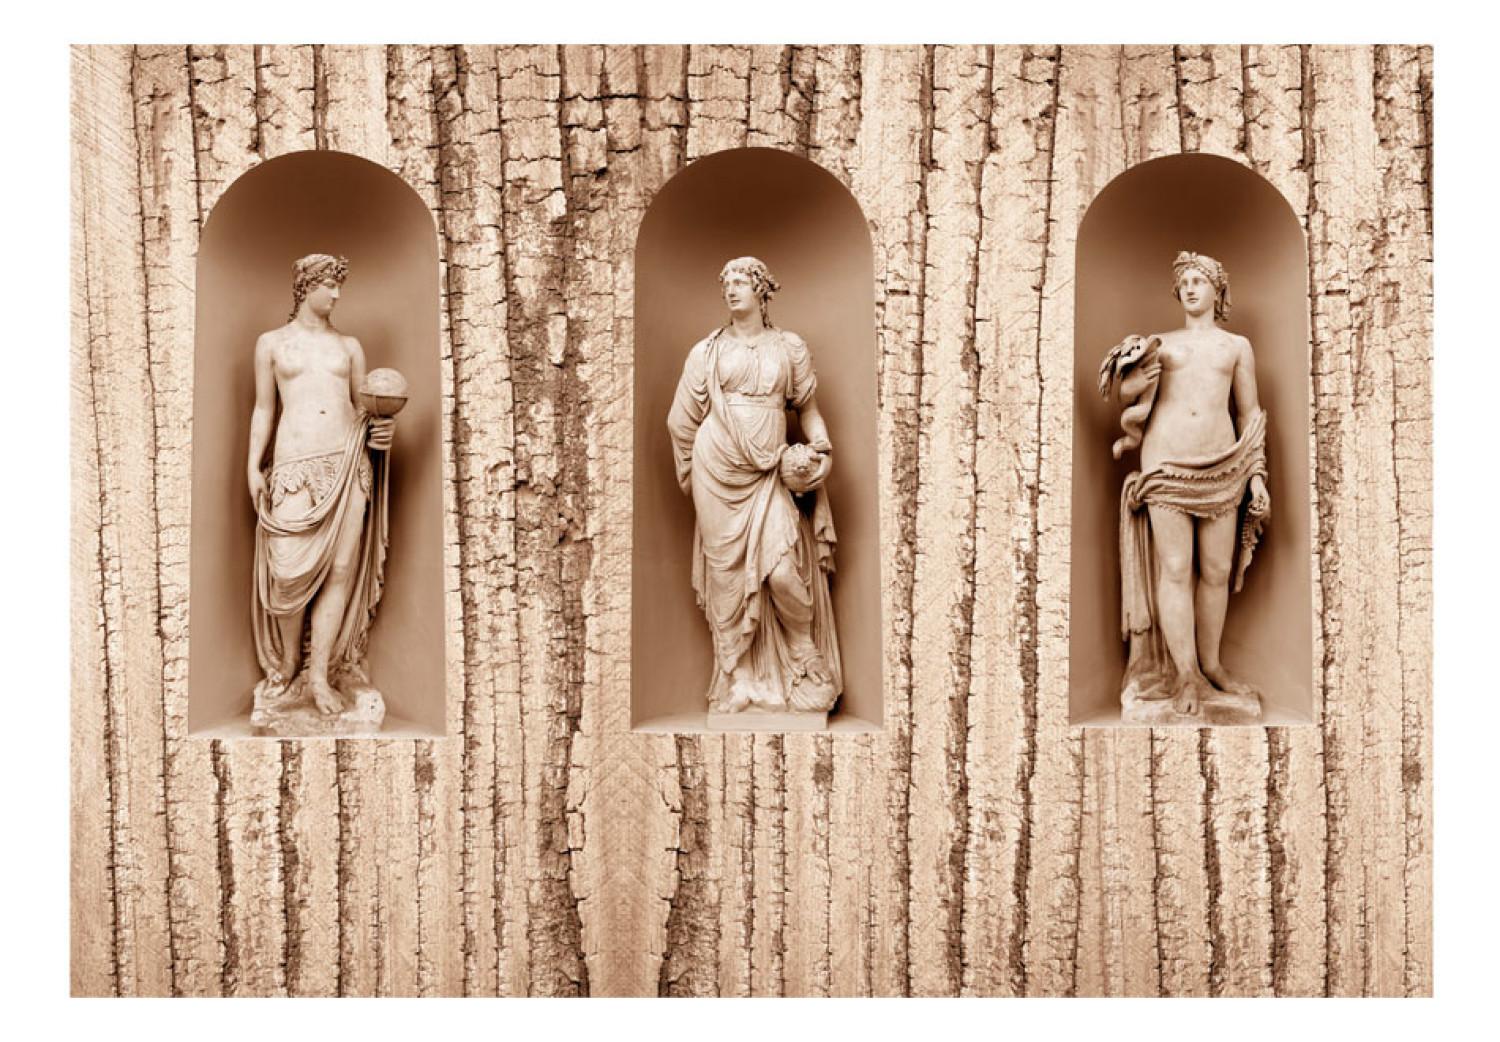 Fotomural a medida Mezcla cultural - tres figuras antiguas sobre madera en estilo retro